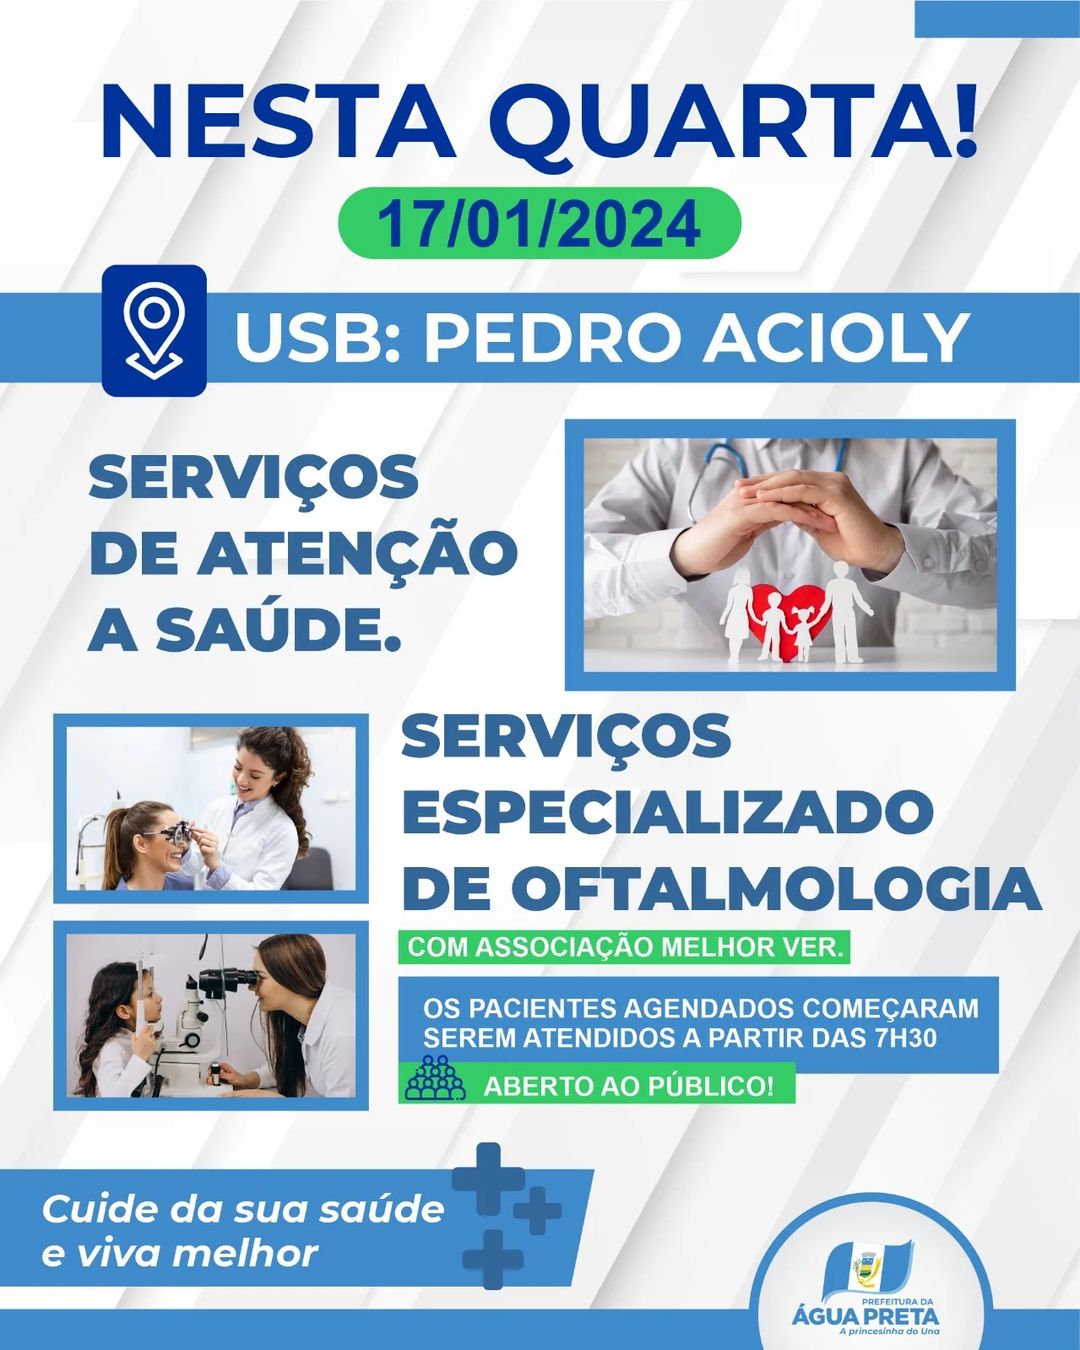 UBS Pedro Acioly faz serviços especializado de oftalmologia